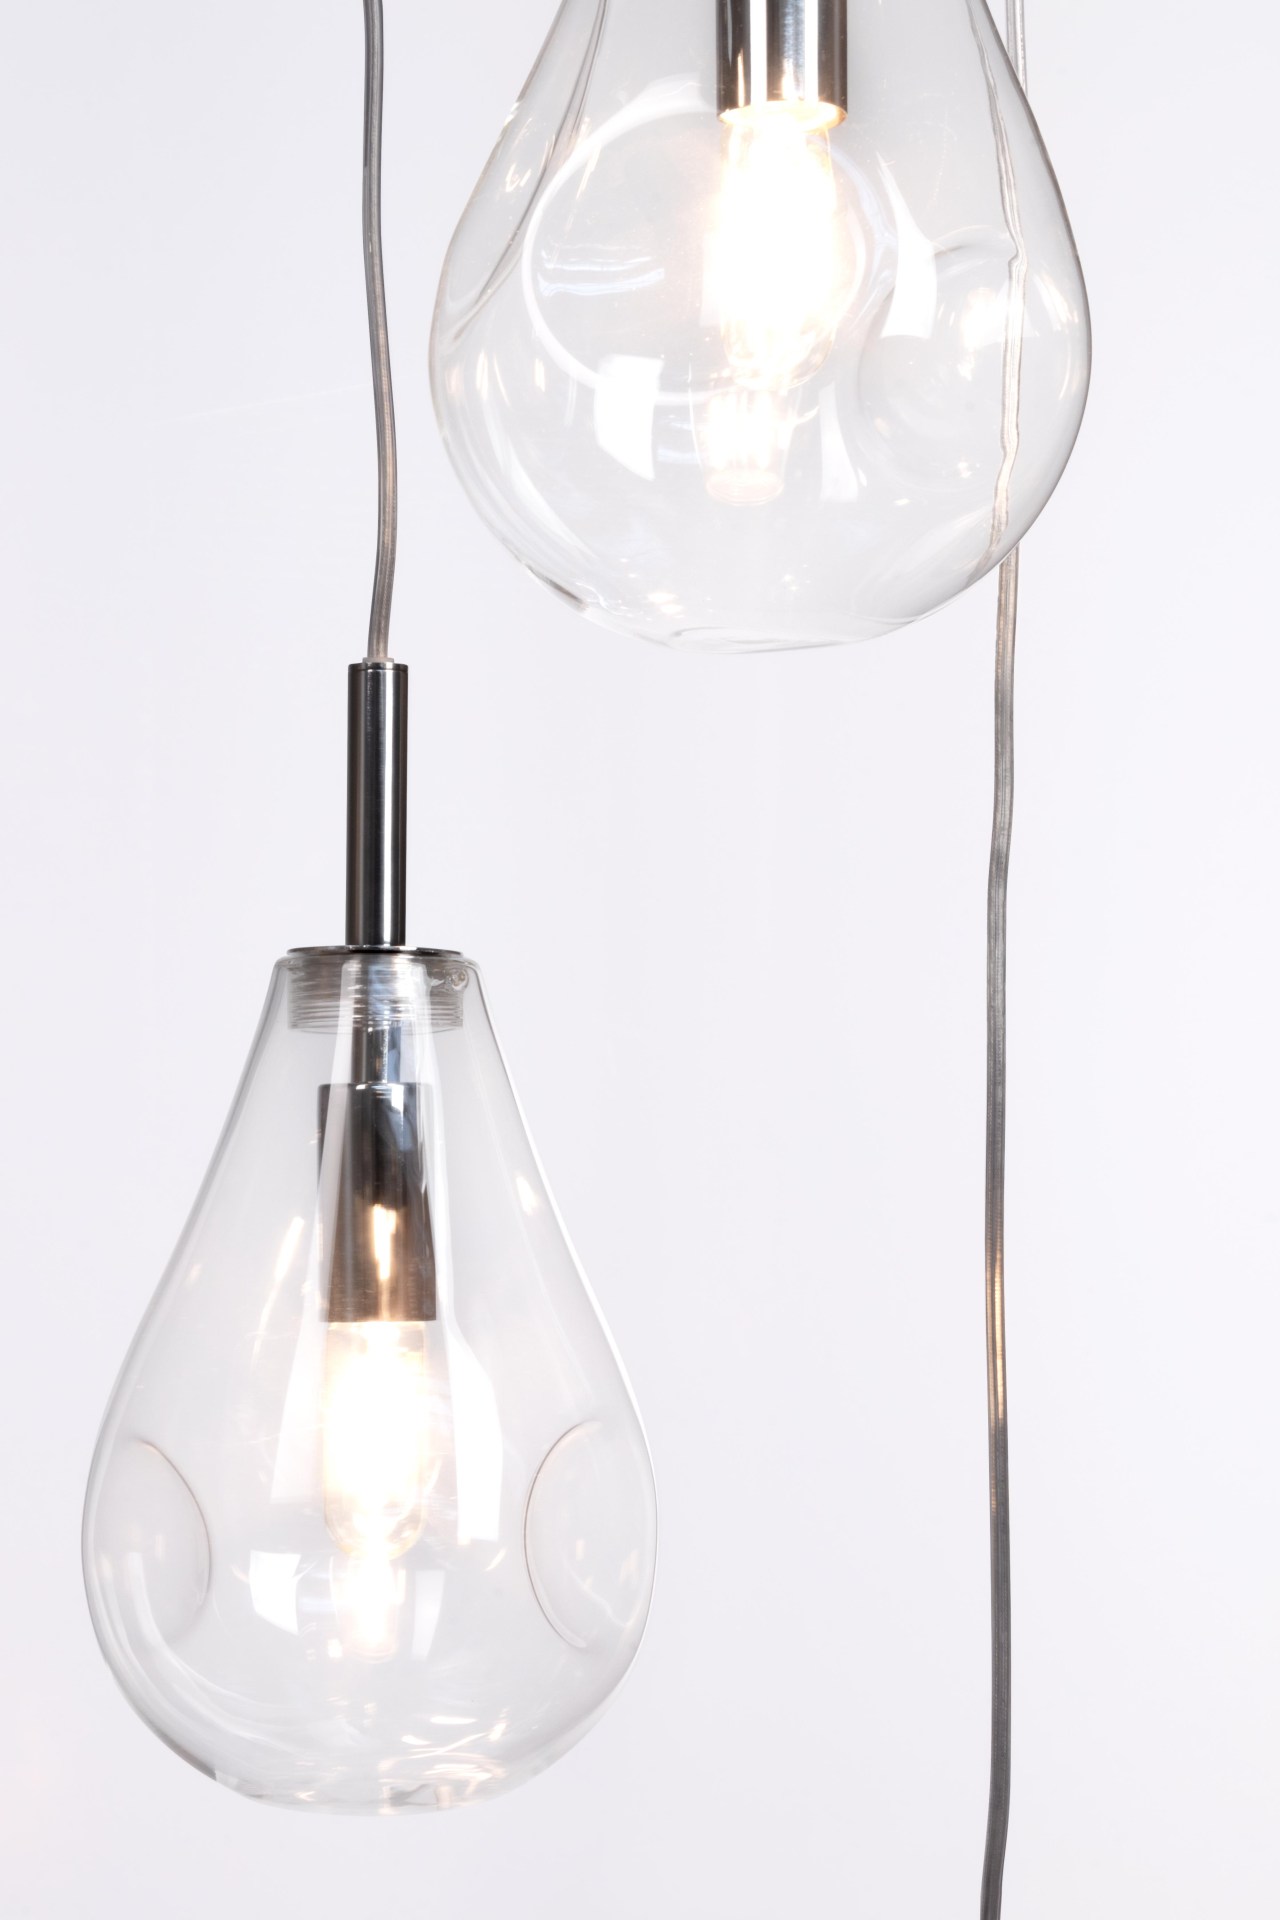 Die Hängeleuchte Refelct überzeugt mit ihrem modernen Design. Gefertigt wurde sie aus Metall, welches einen silberne Farbton besitzt. Die Lampenschirme sind aus Glas und sind klar. Die Lampe besitzt eine Höhe von 120 cm.